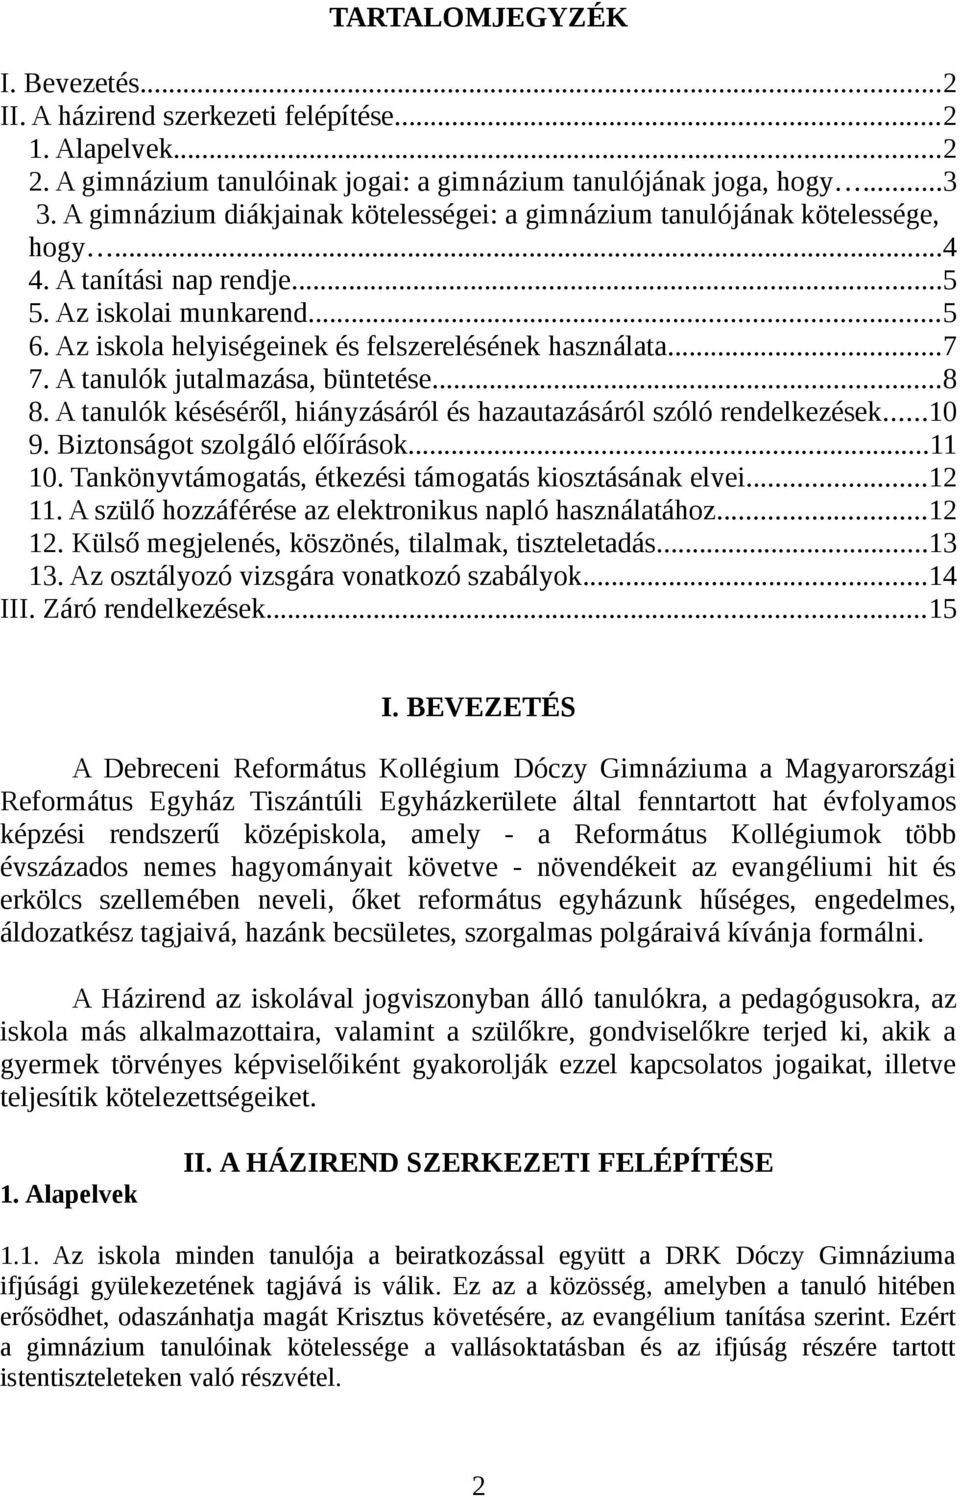 A Debreceni Református Kollégium. Dóczy Gimnáziumának HÁZIRENDJE - PDF Free  Download